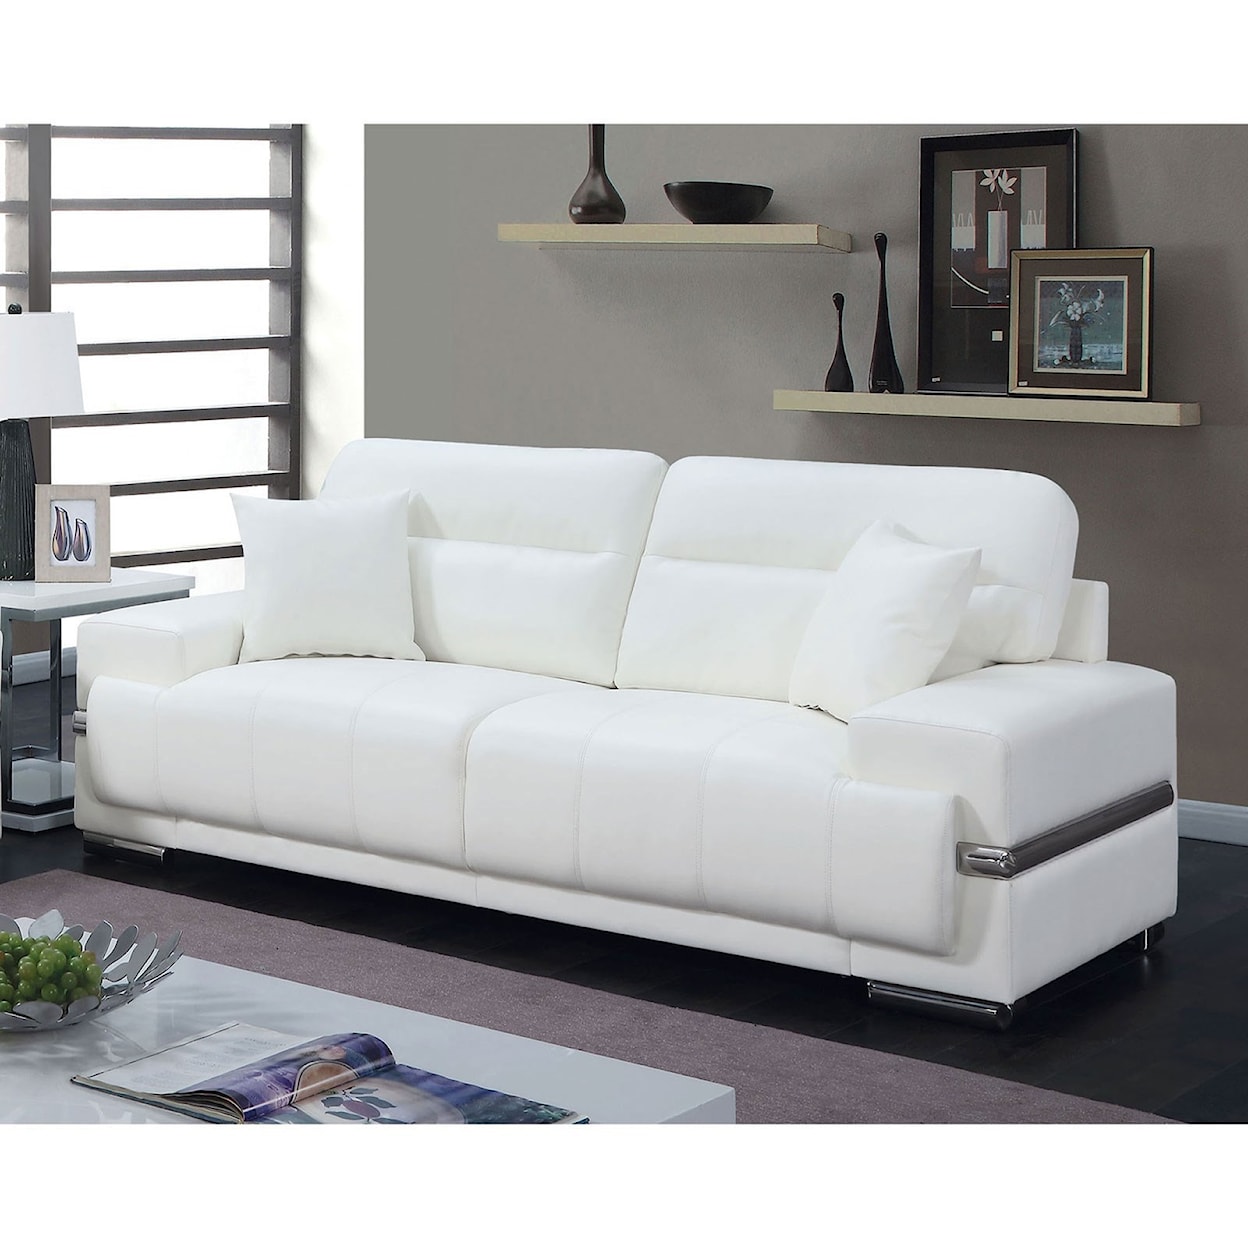 Furniture of America Zibak Sofa